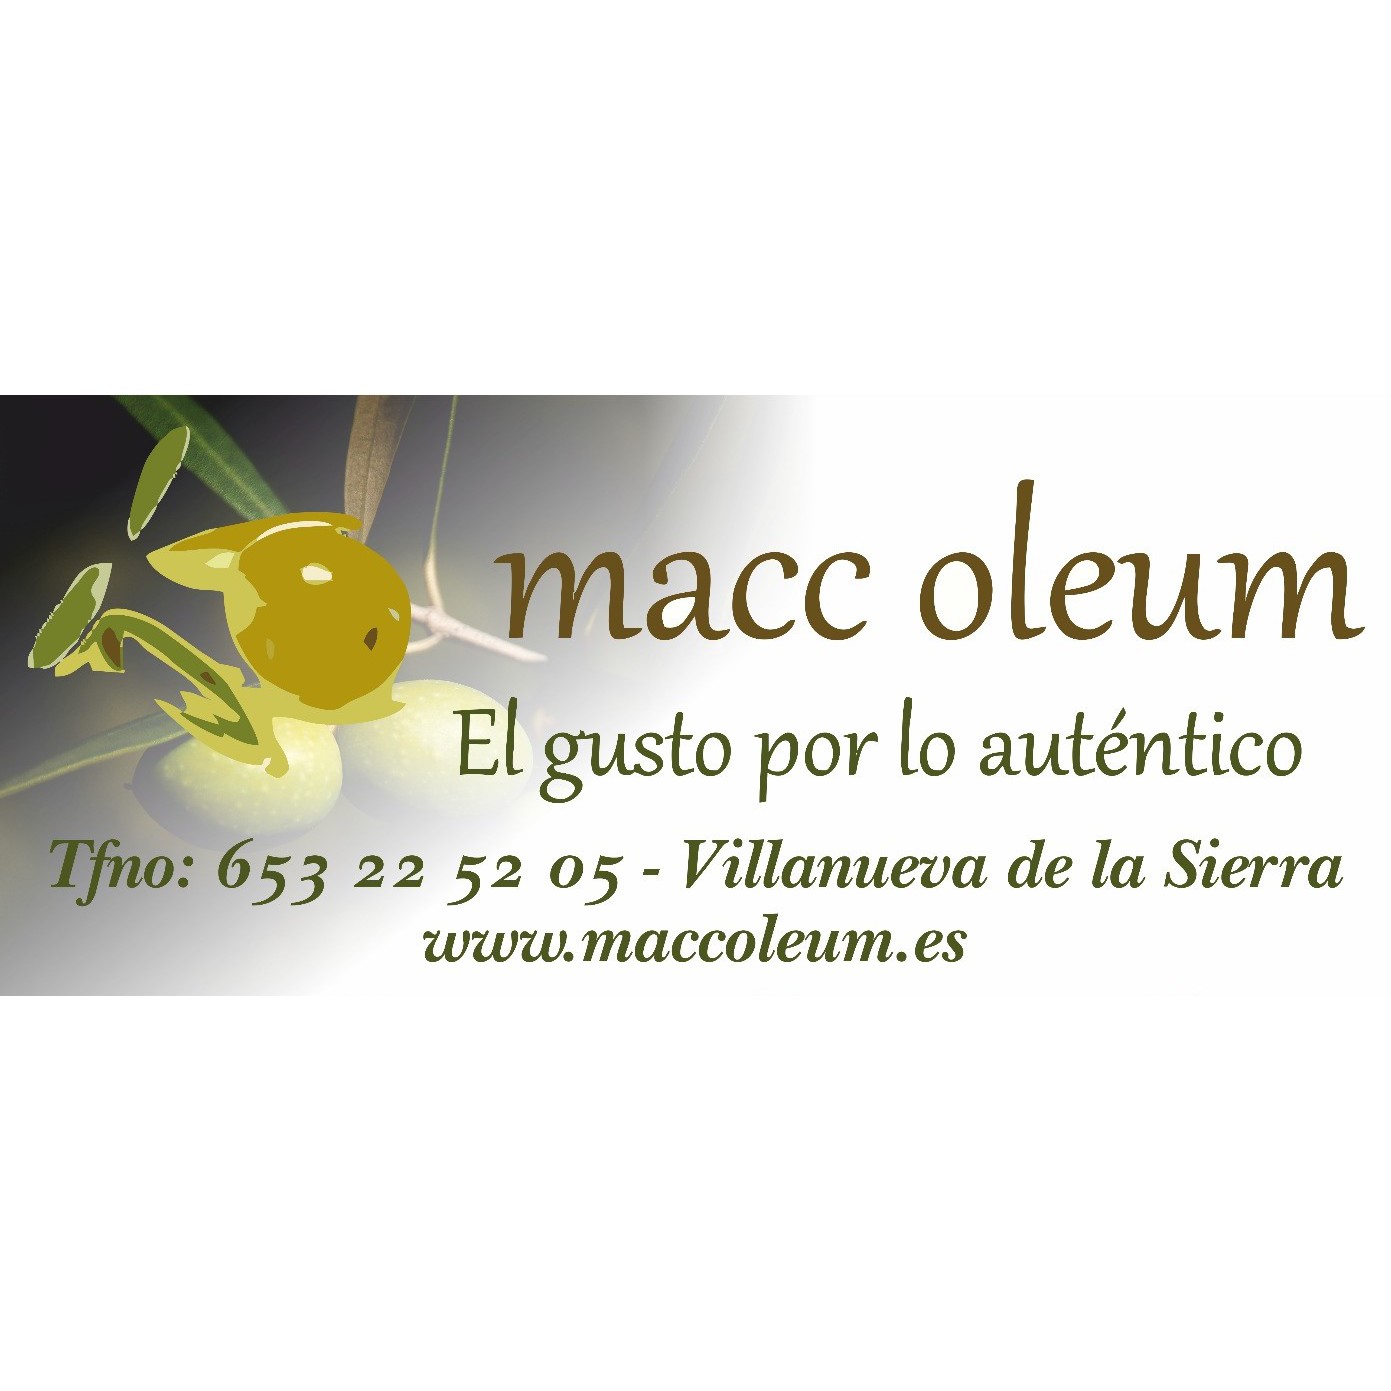 Macc Oleum S.L. Villanueva de la Sierra